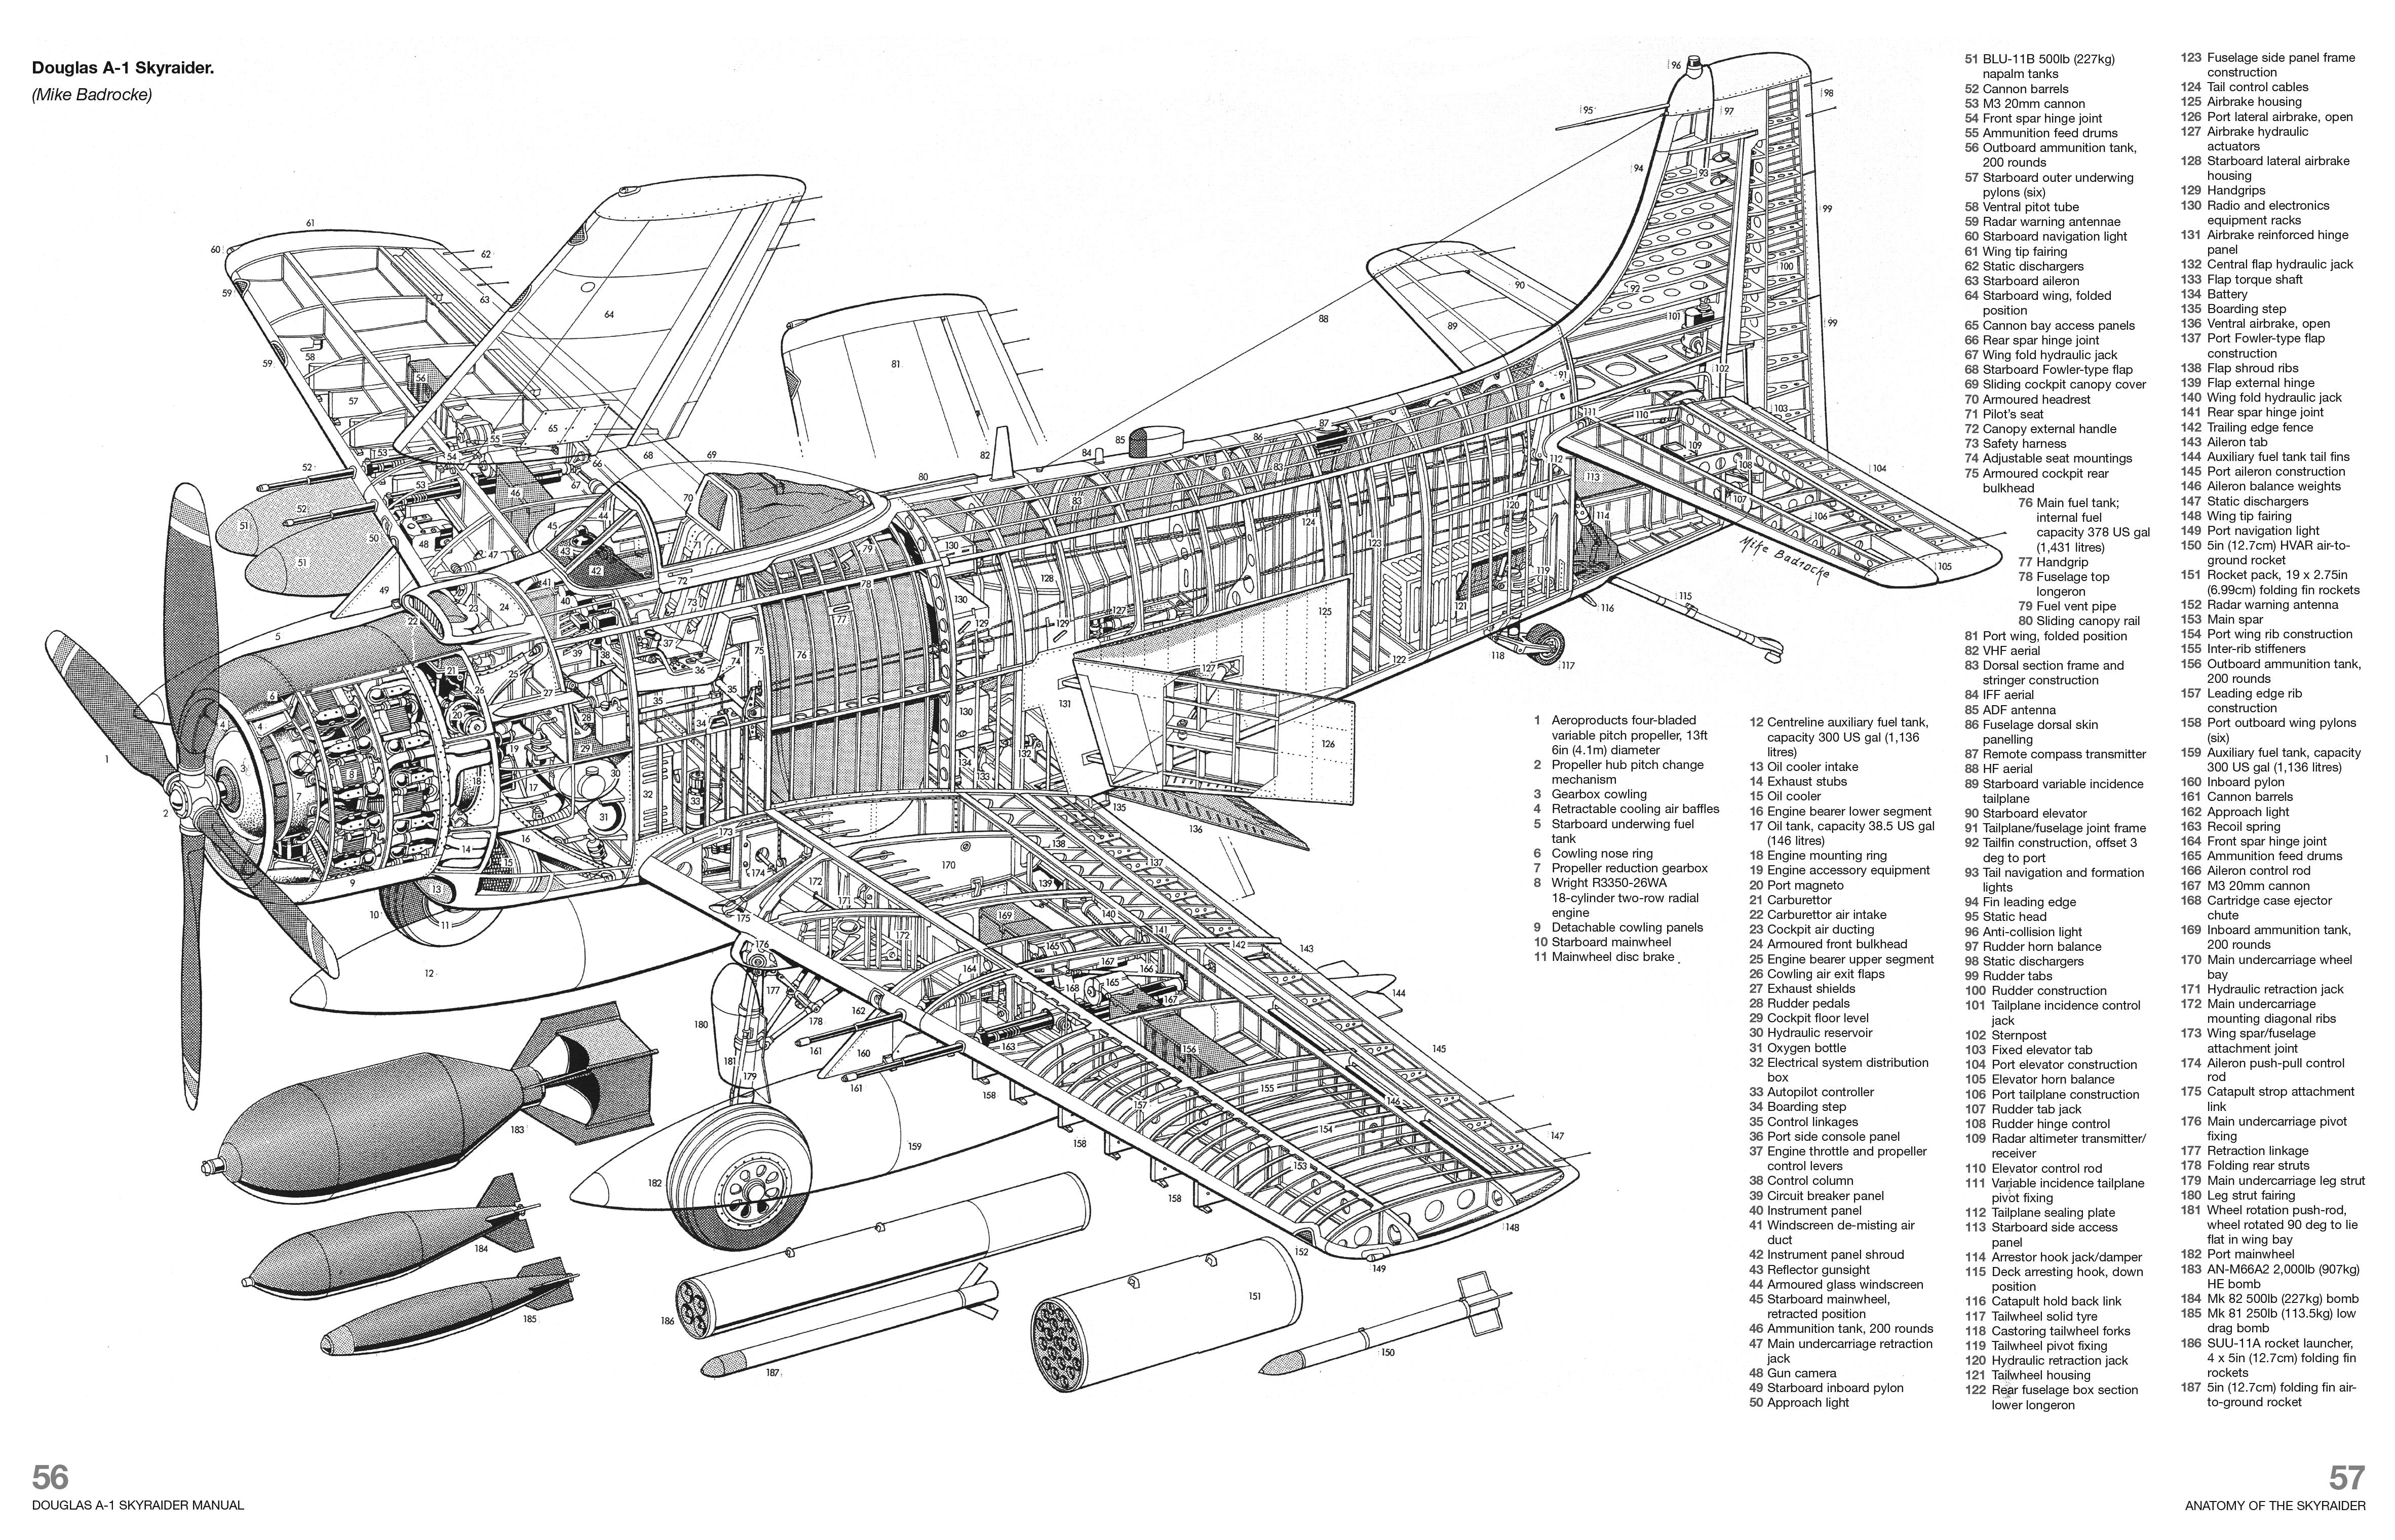 aircraft blueprint title block